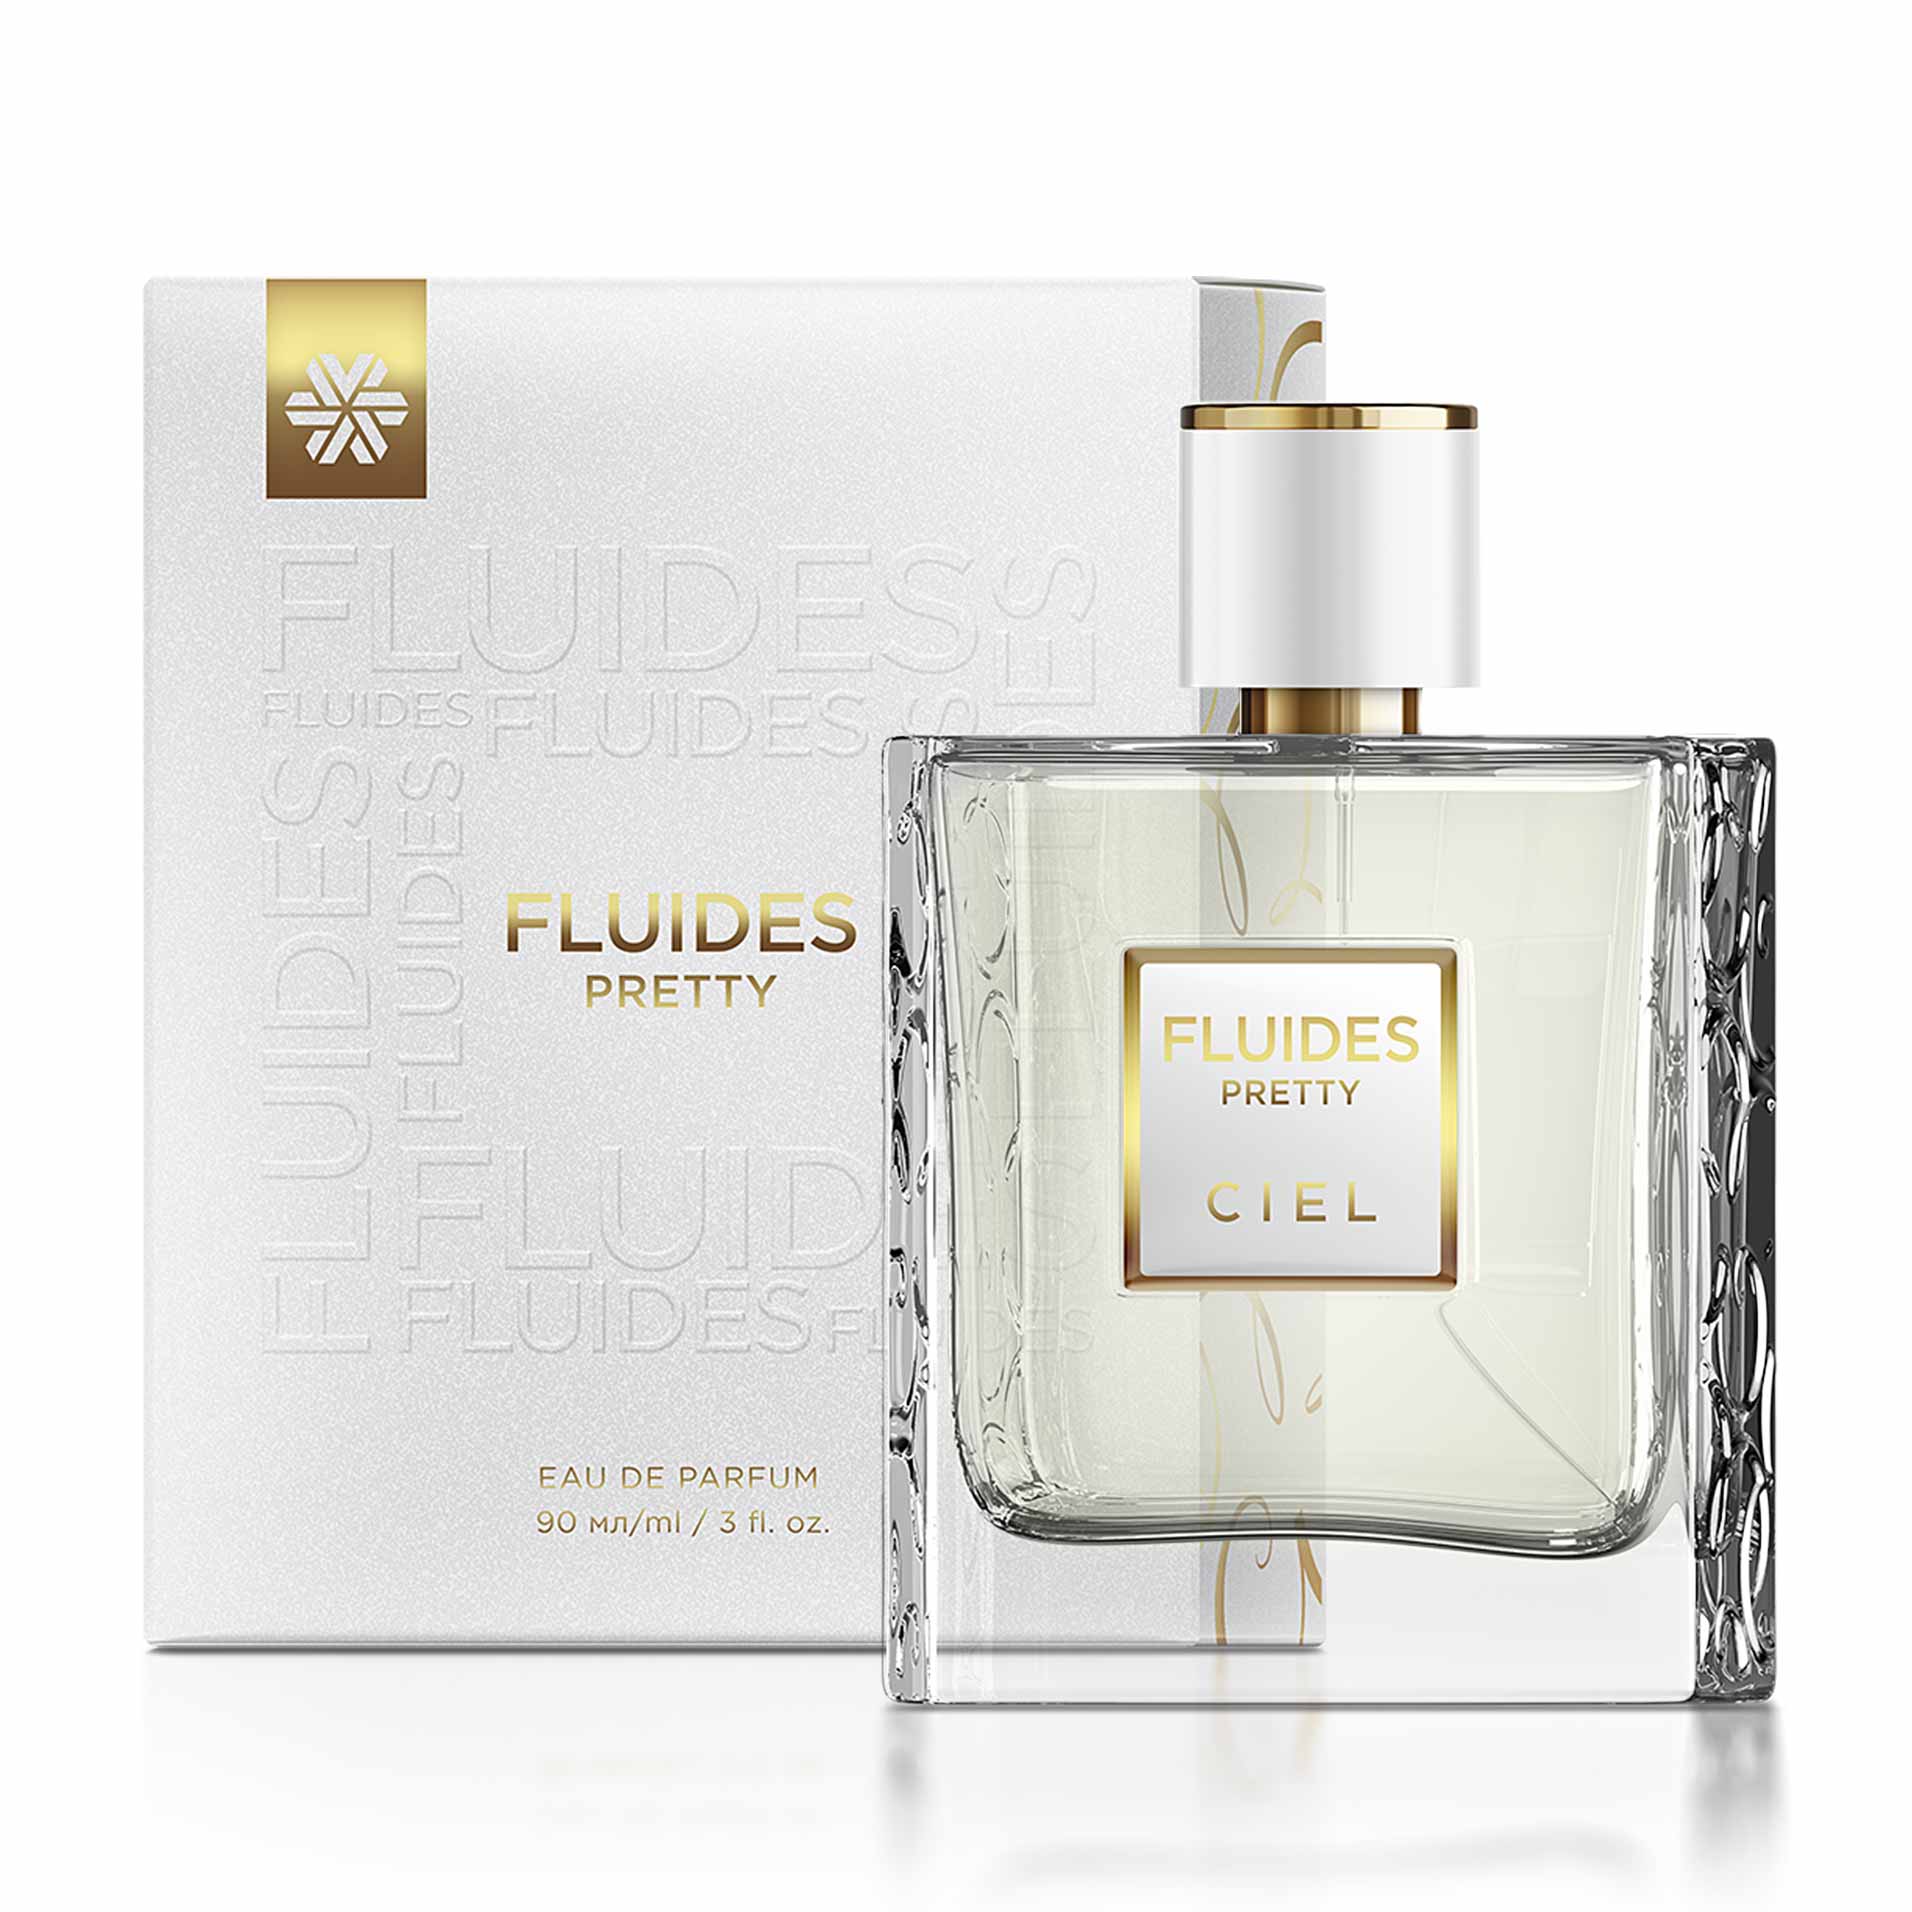 Изображение отсутствует.
			Купить FLUIDES Pretty, парфюмерная вода - Коллекция ароматов Ciel //  // 